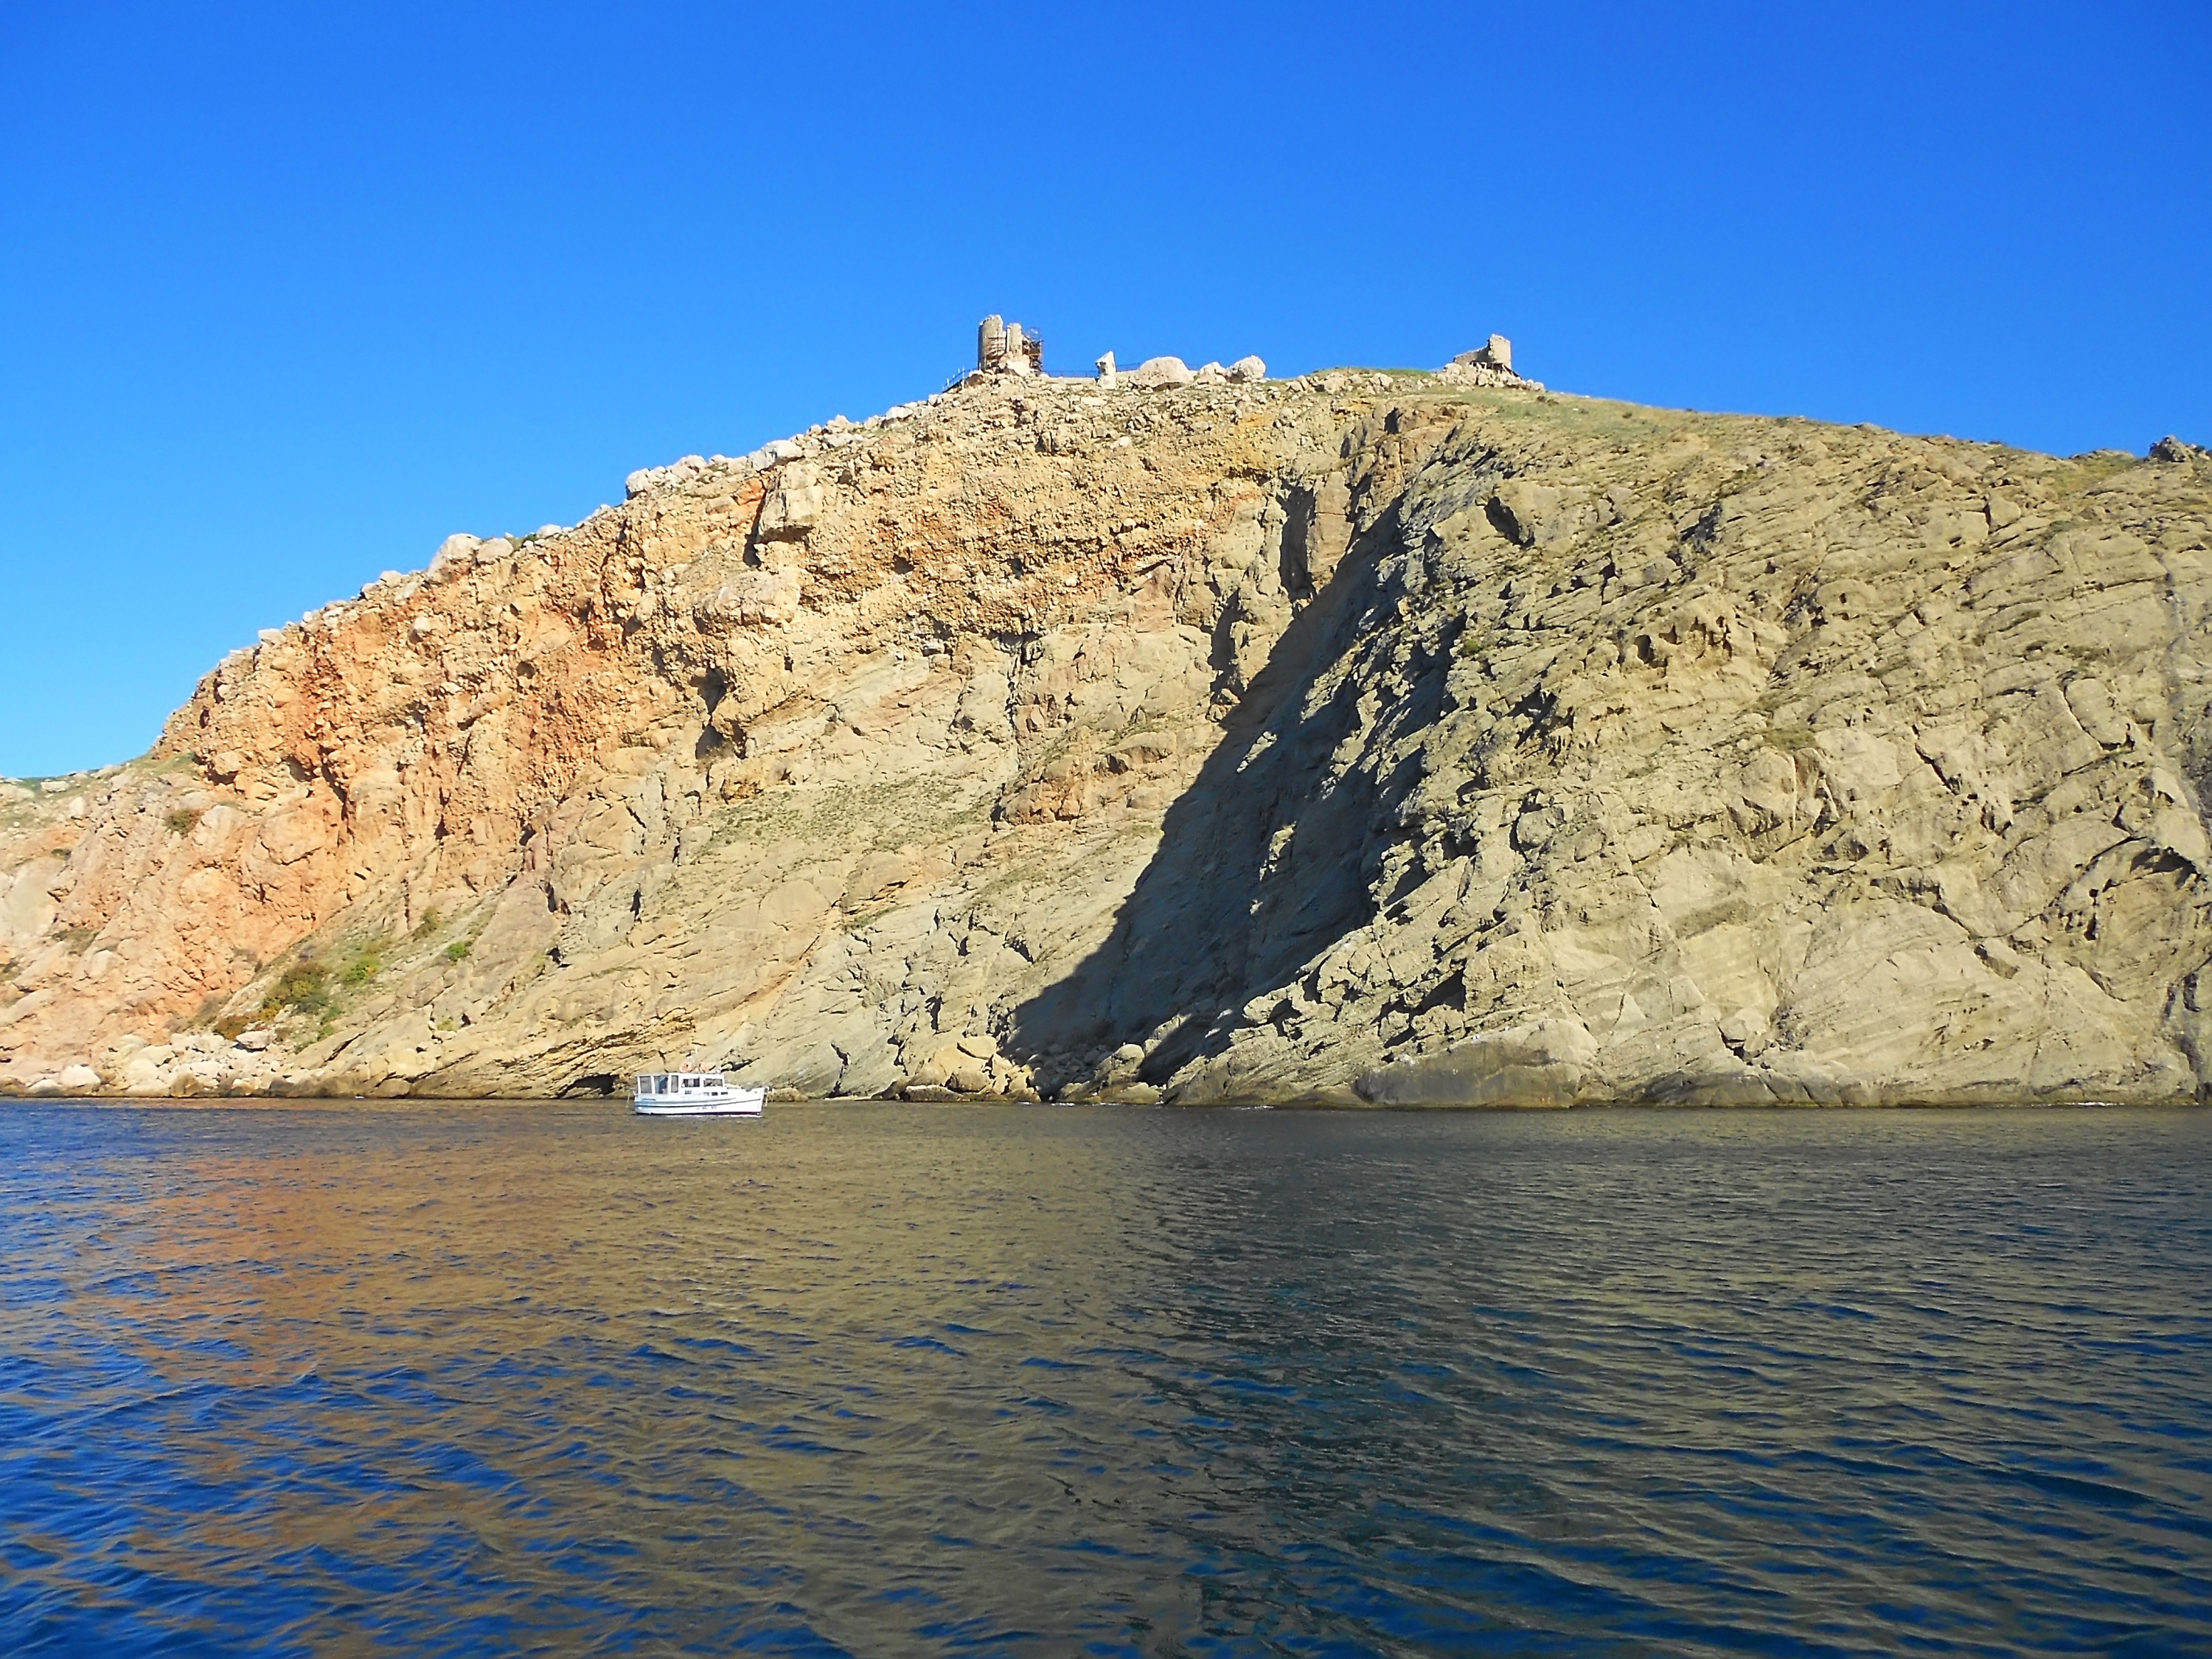 Горный массив Балаклавской бухты, вид с катера, фото